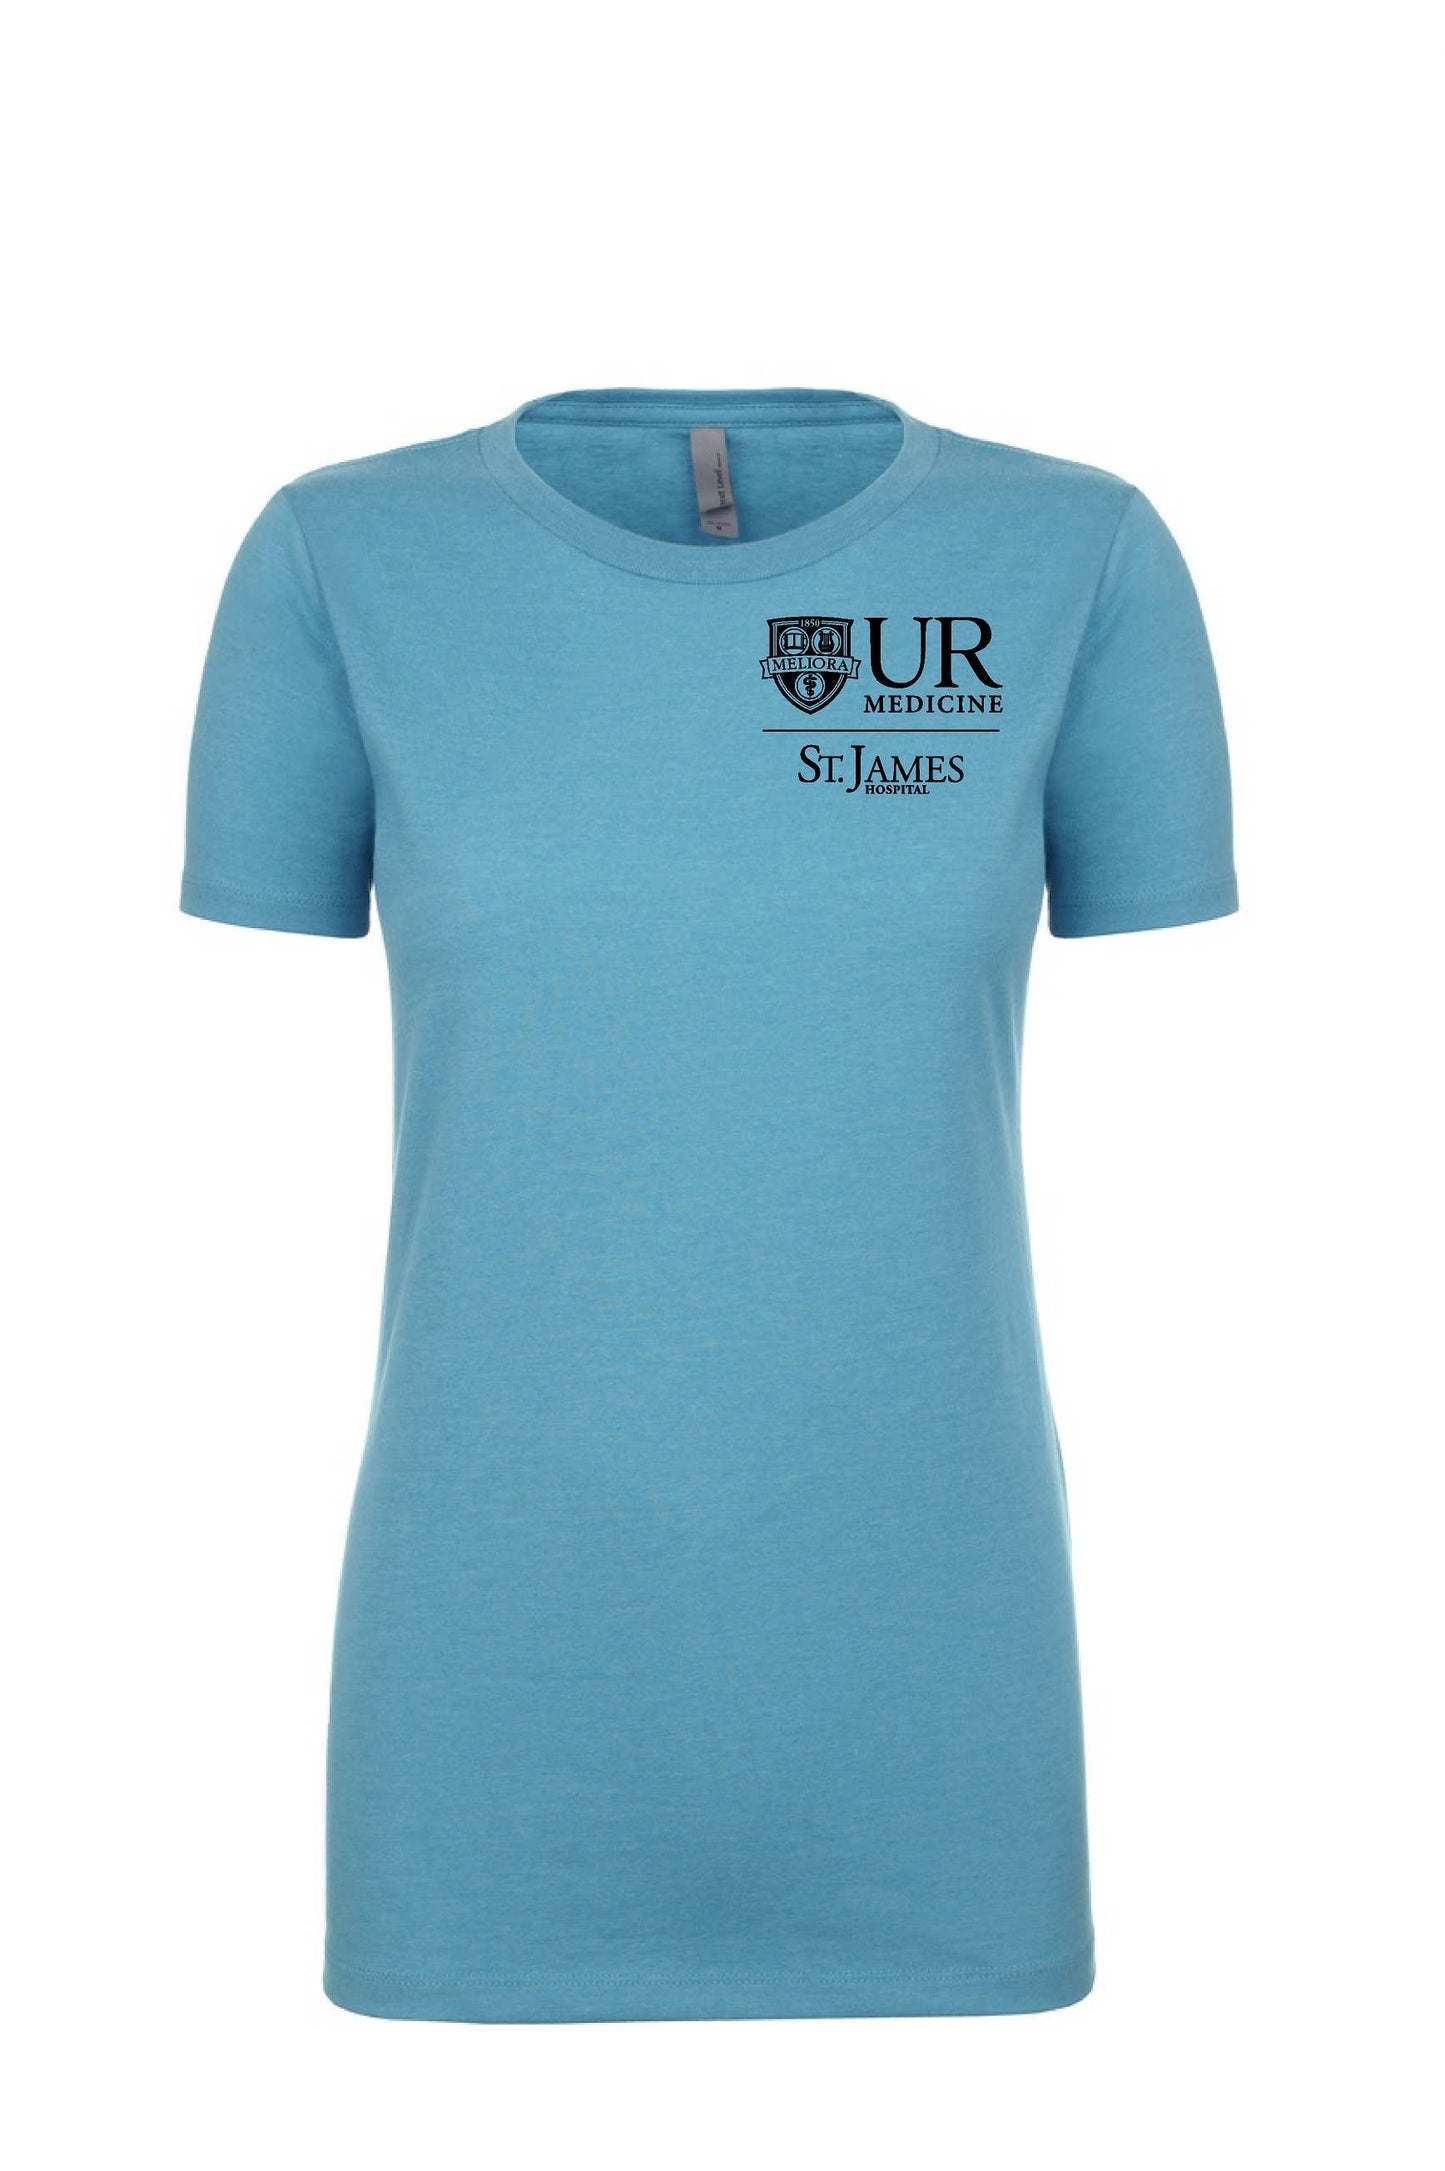 UR Medicine NL075 Next Level Apparel® 6610 Women's CVC T-Shirt